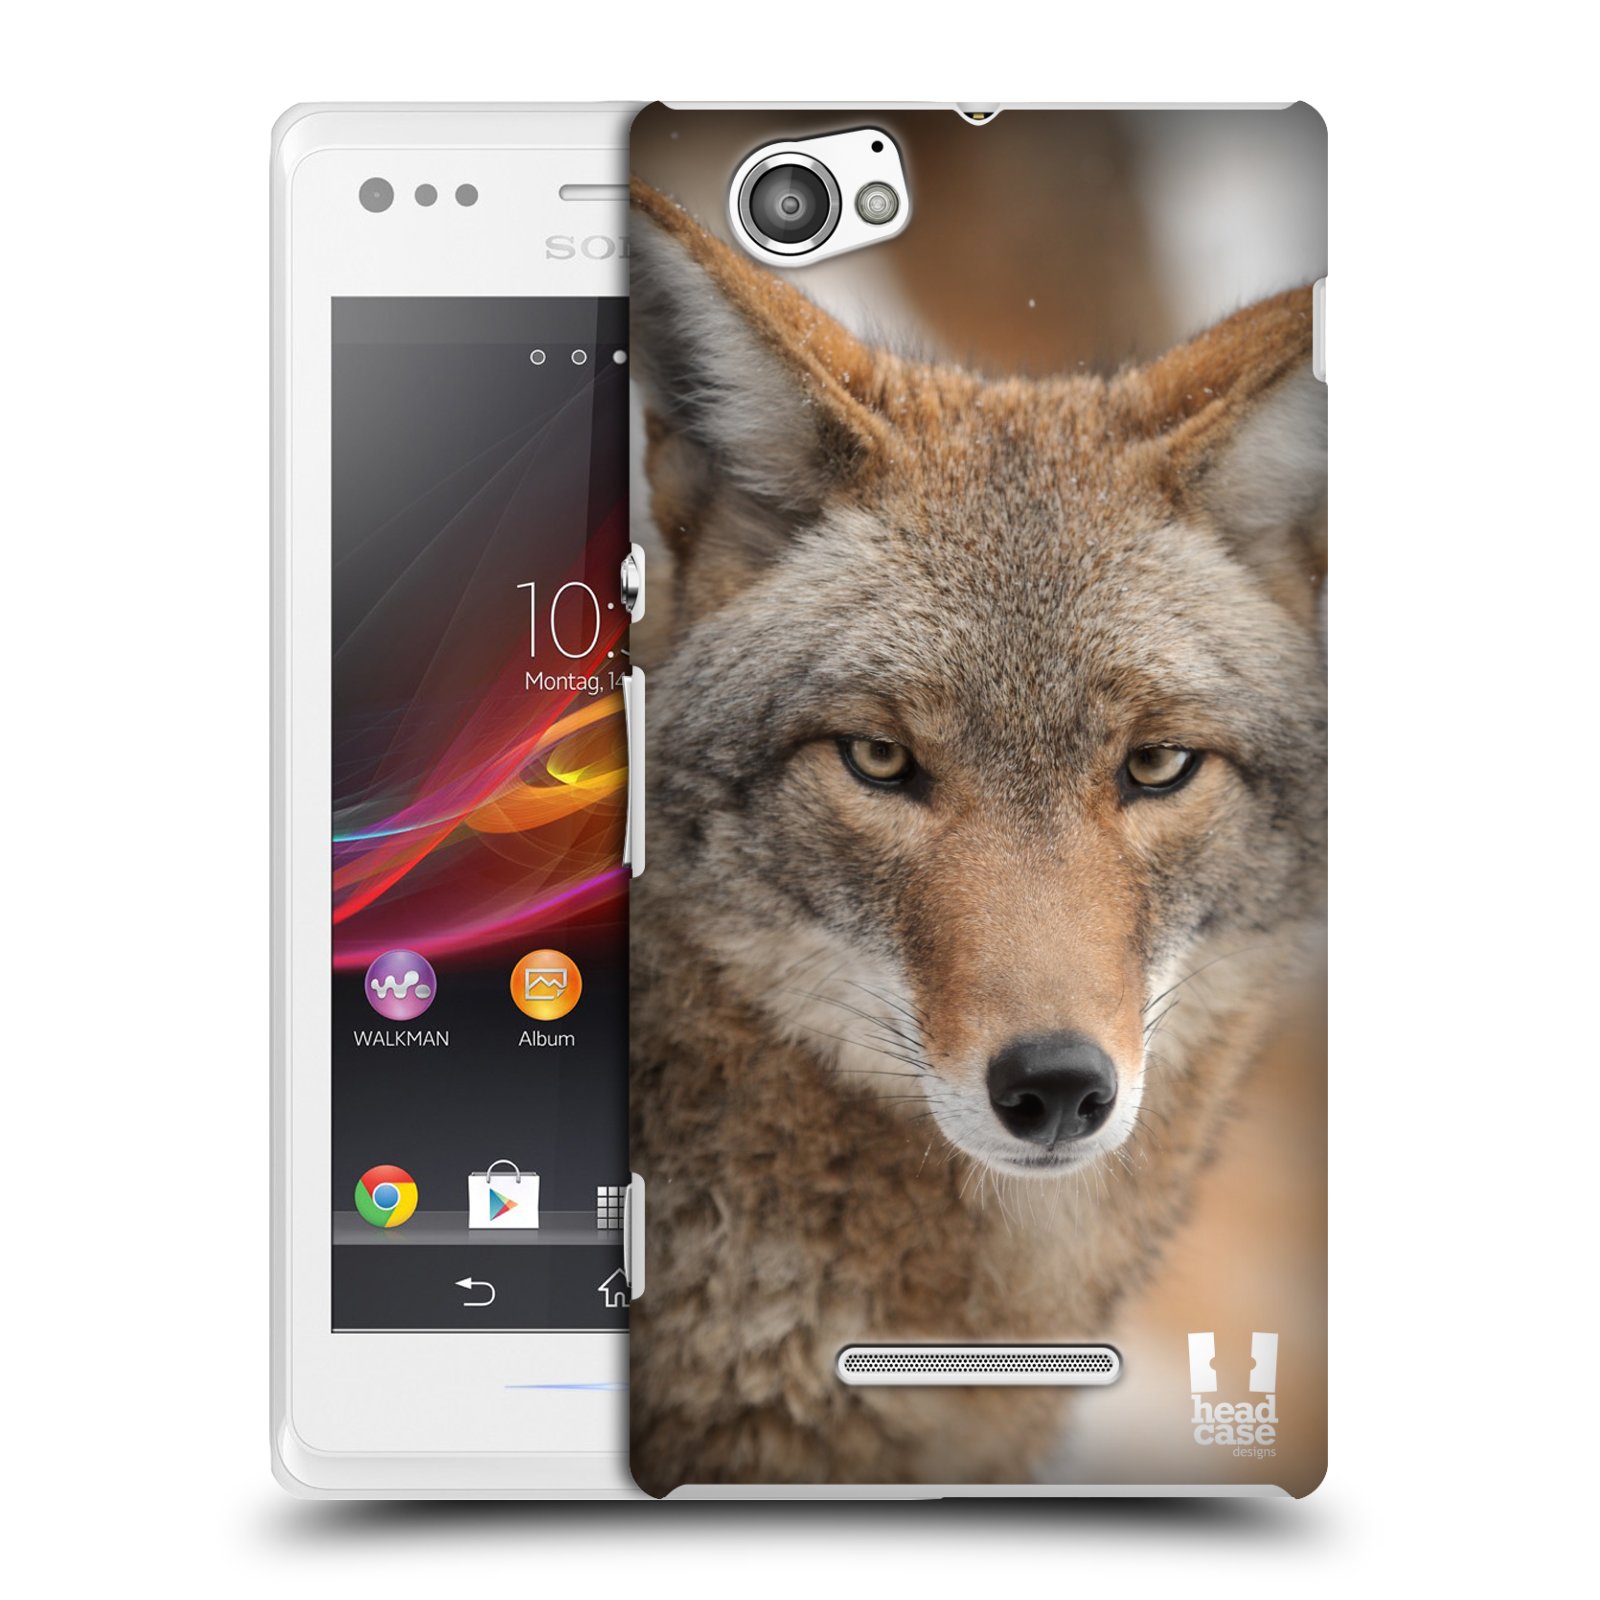 HEAD CASE plastový obal na mobil Sony Xperia M vzor slavná zvířata foto kojot